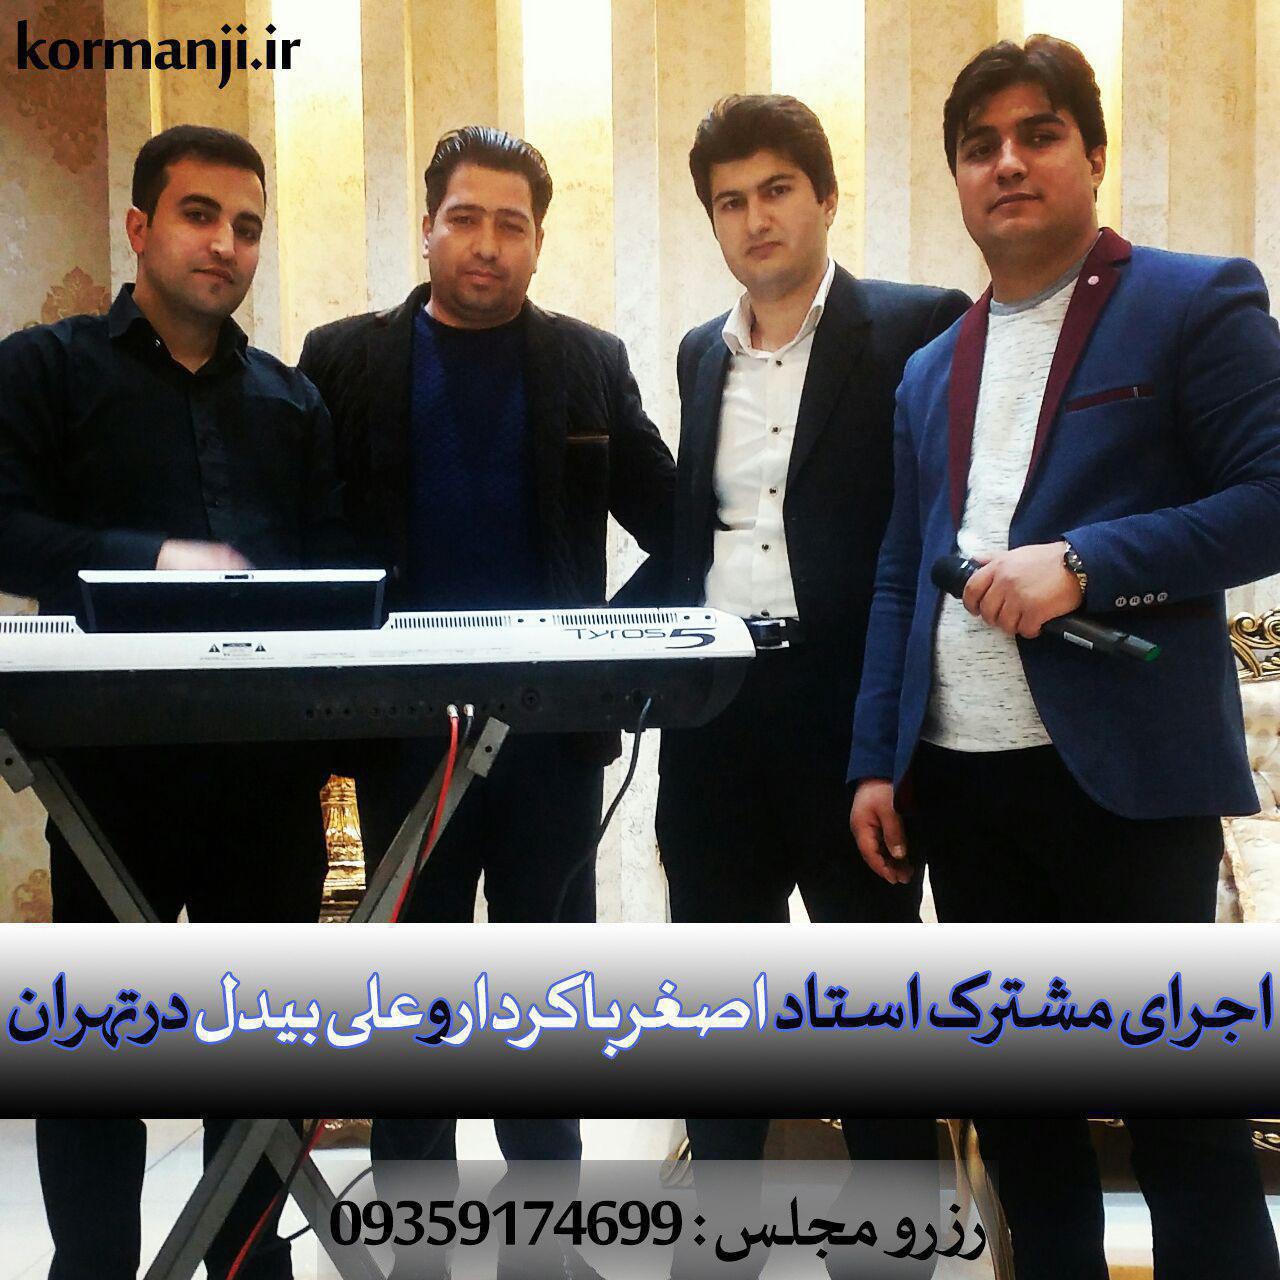 سه کلیپ از اجرای مشترک اصغرباکردار و علی بیدل در کرمانج موزیک